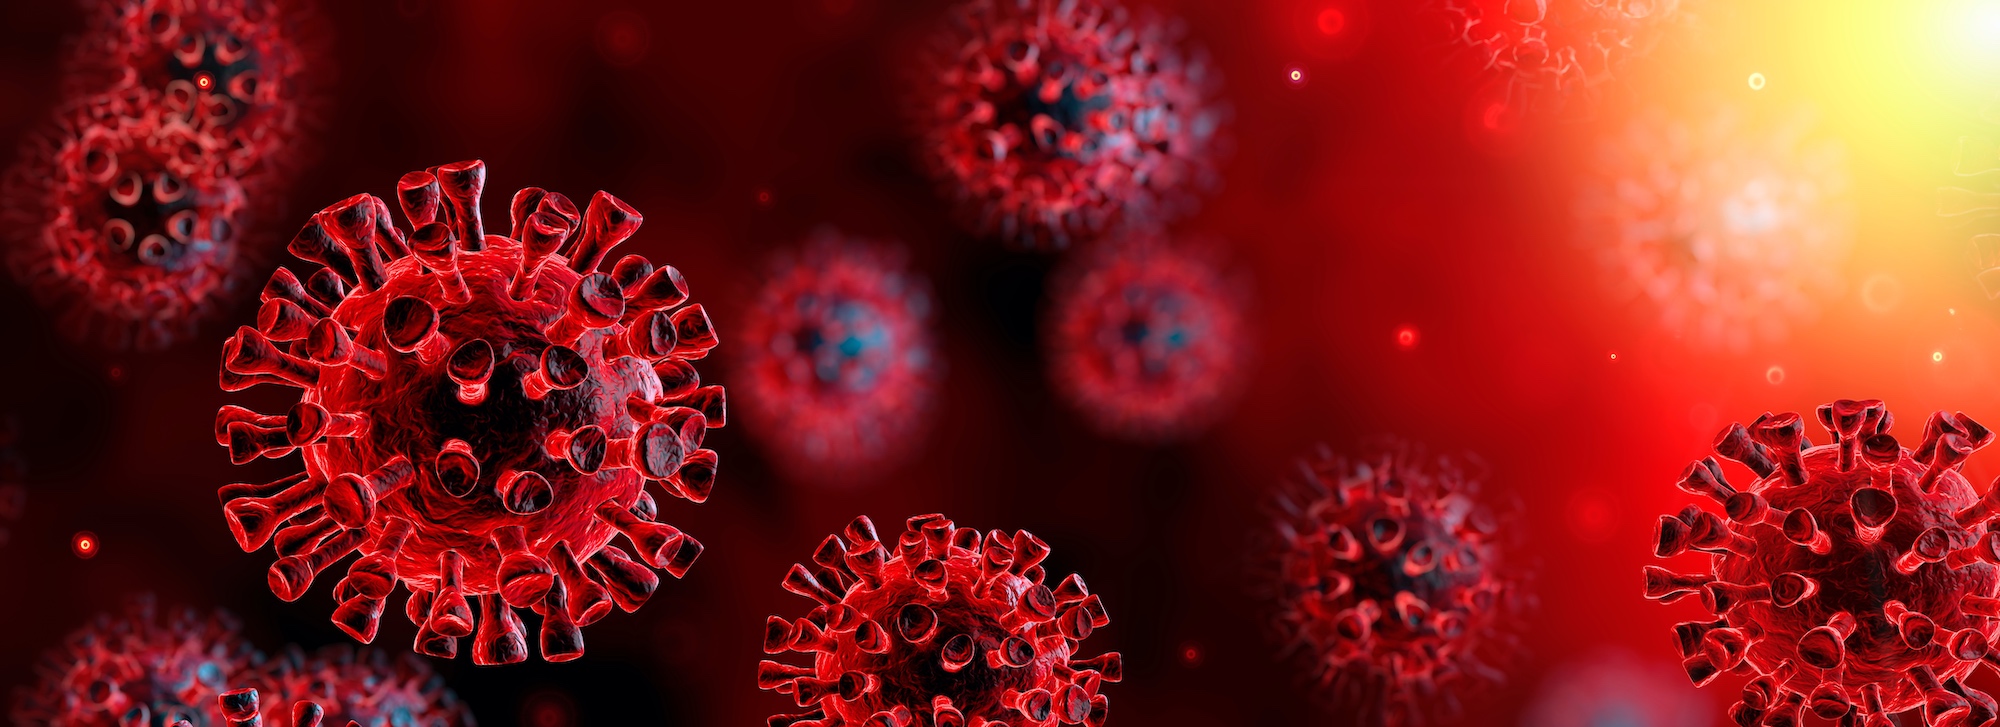 artistic rendering of the virus